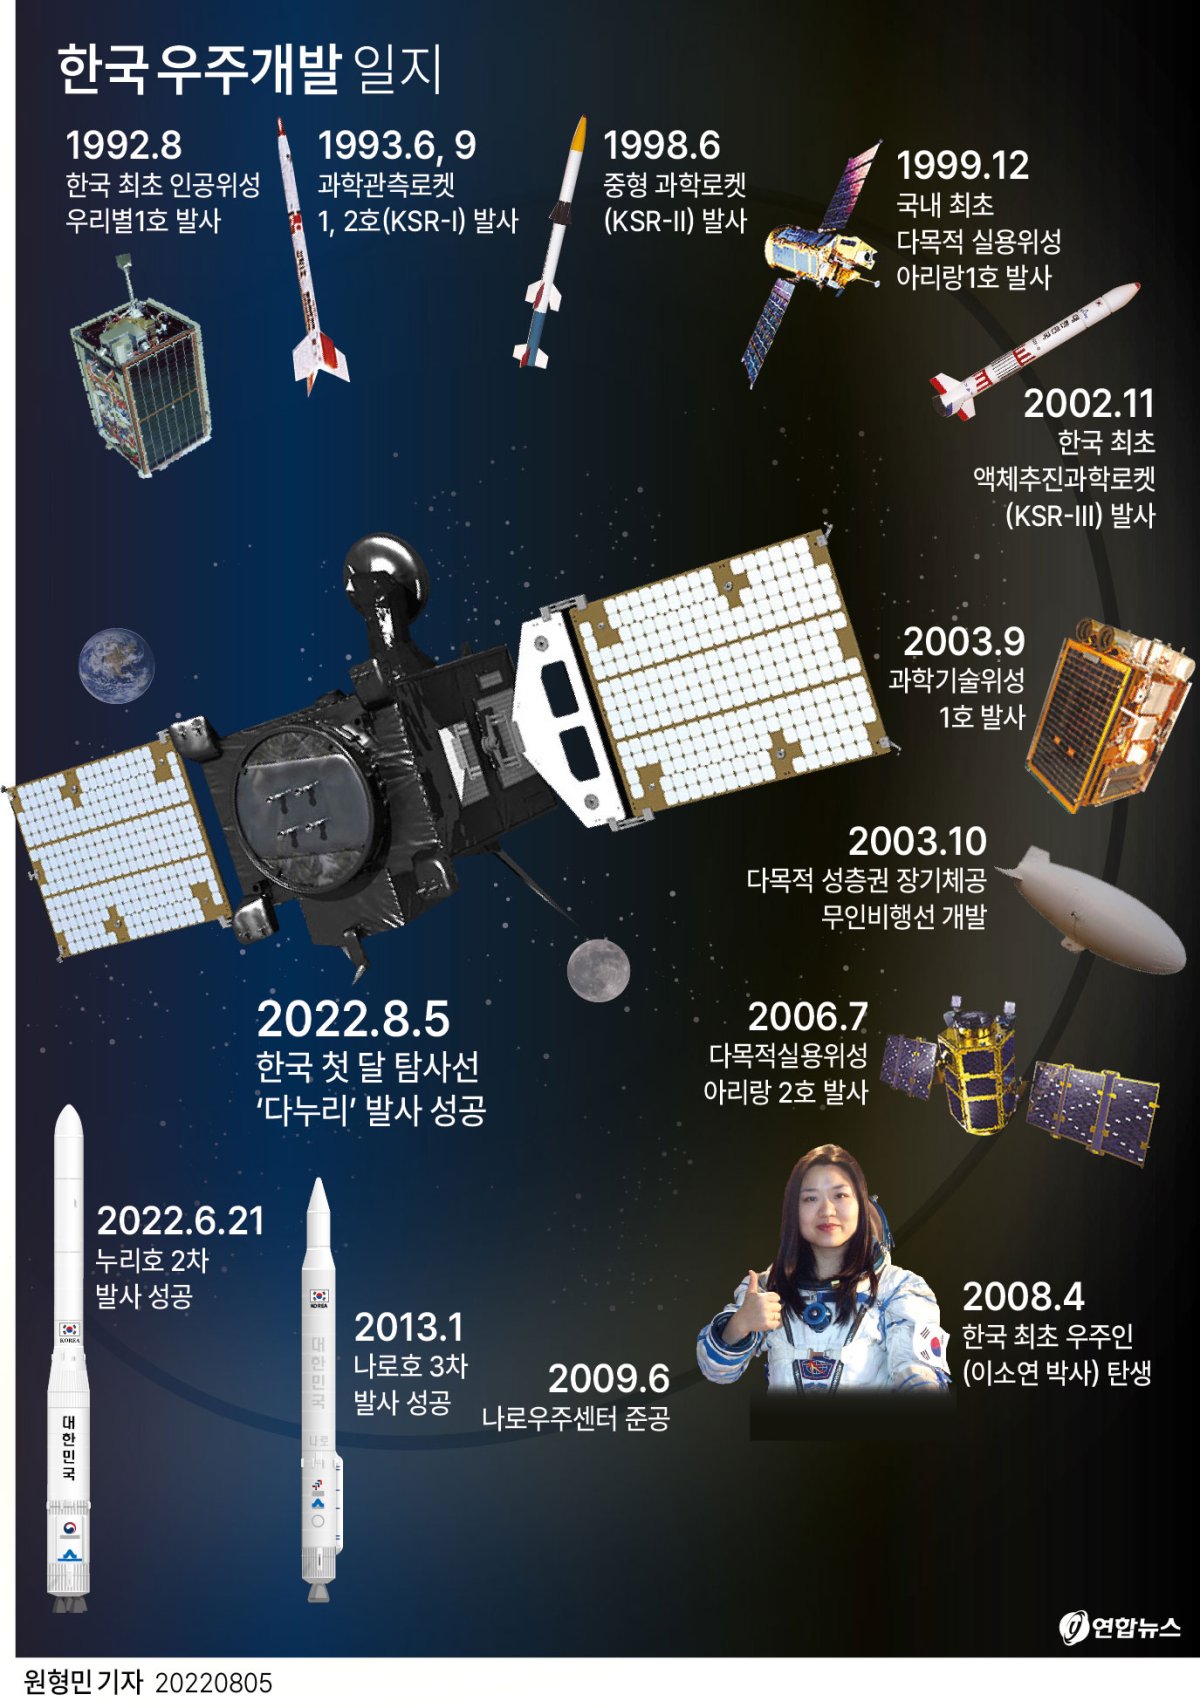 [그래픽] 한국 우주개발 일지